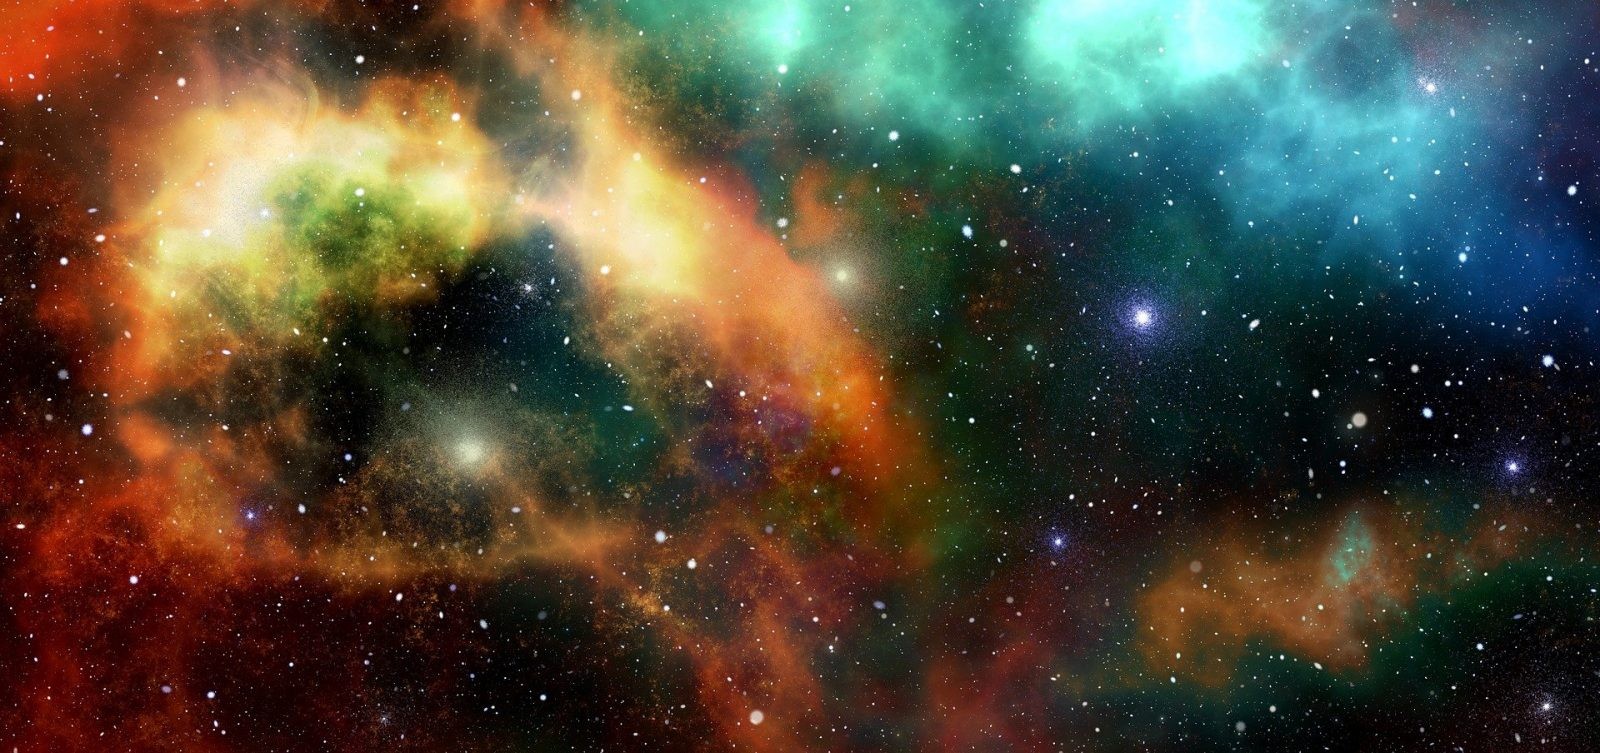 „Skamieniałości” najstarszej galaktyki odnalezione! Wszystko stało się dziełem przypadku. Jak to możliwe?